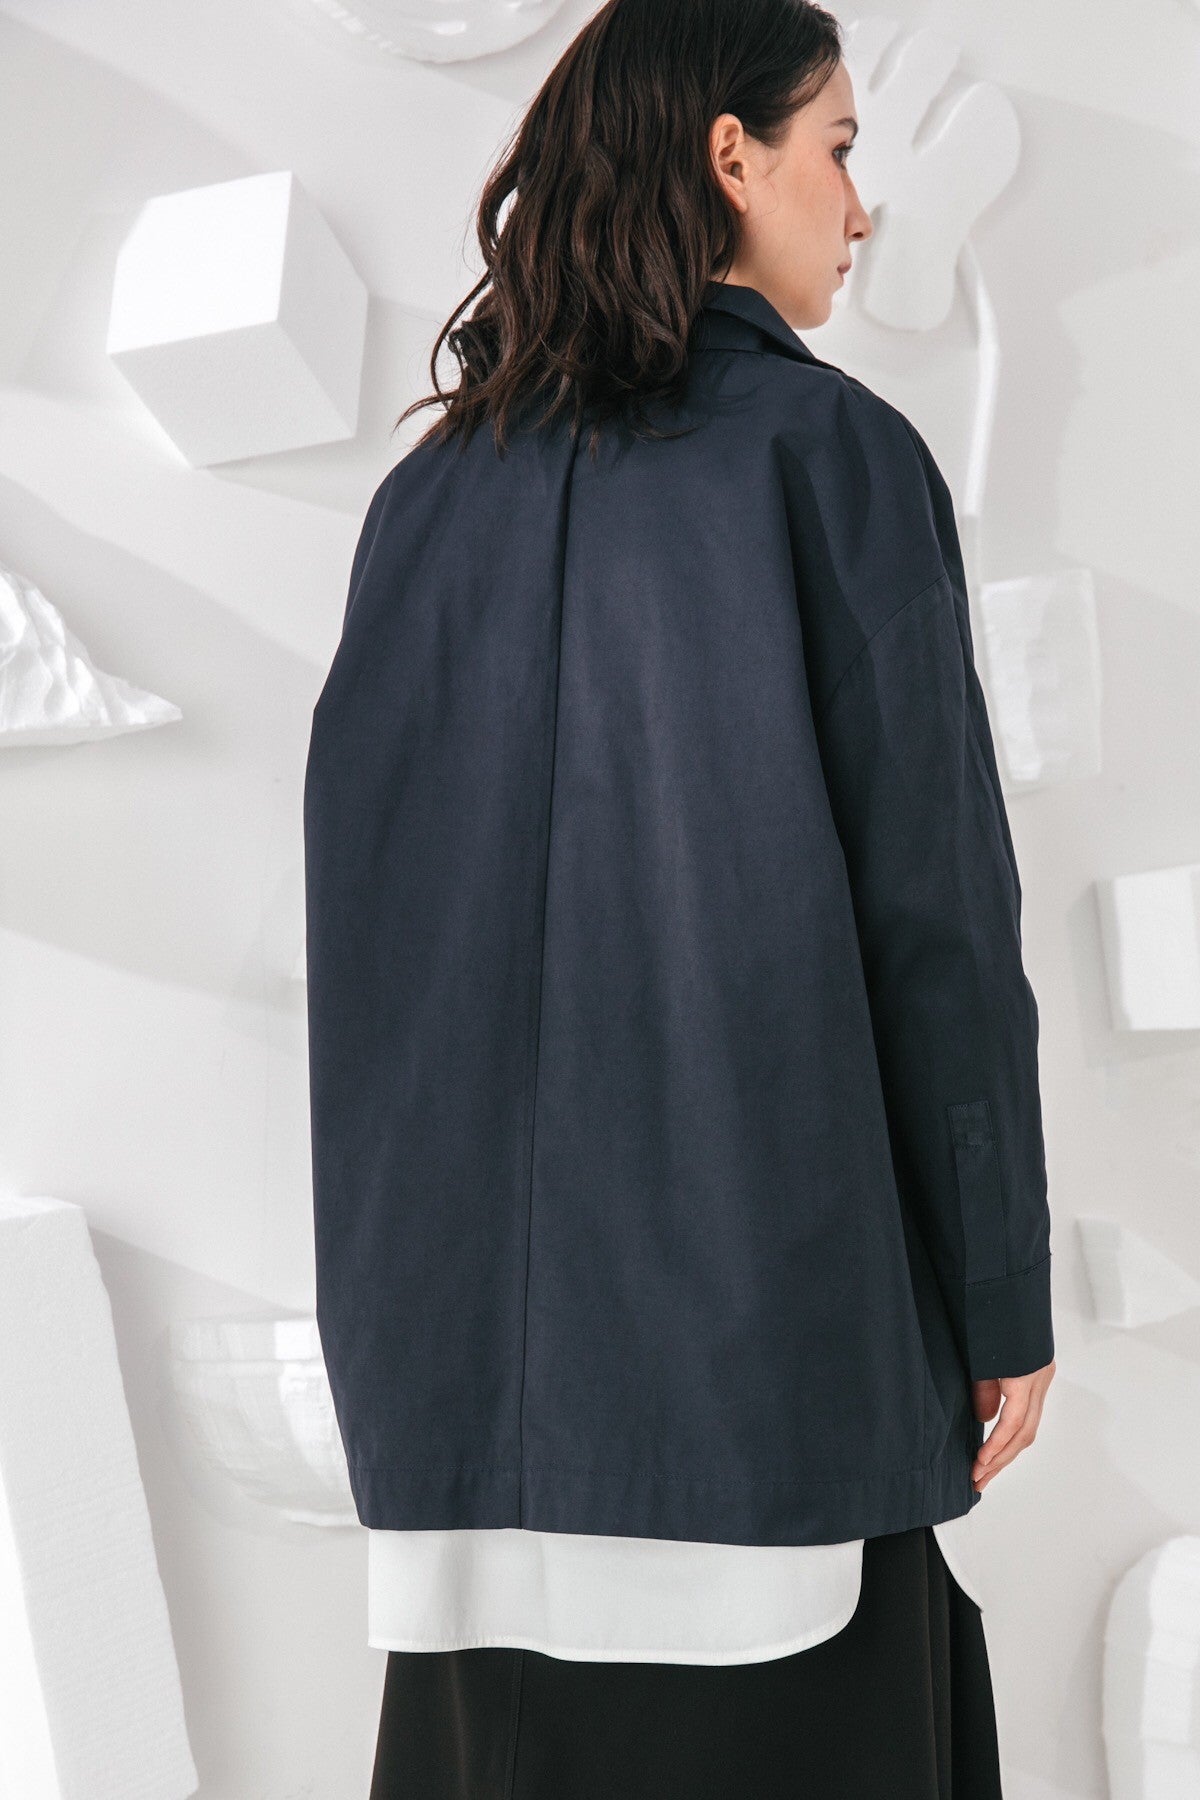 SKYE San Francisco SF shop ethical modern minimalist quality women clothing fashion Gabrielle Coat blue